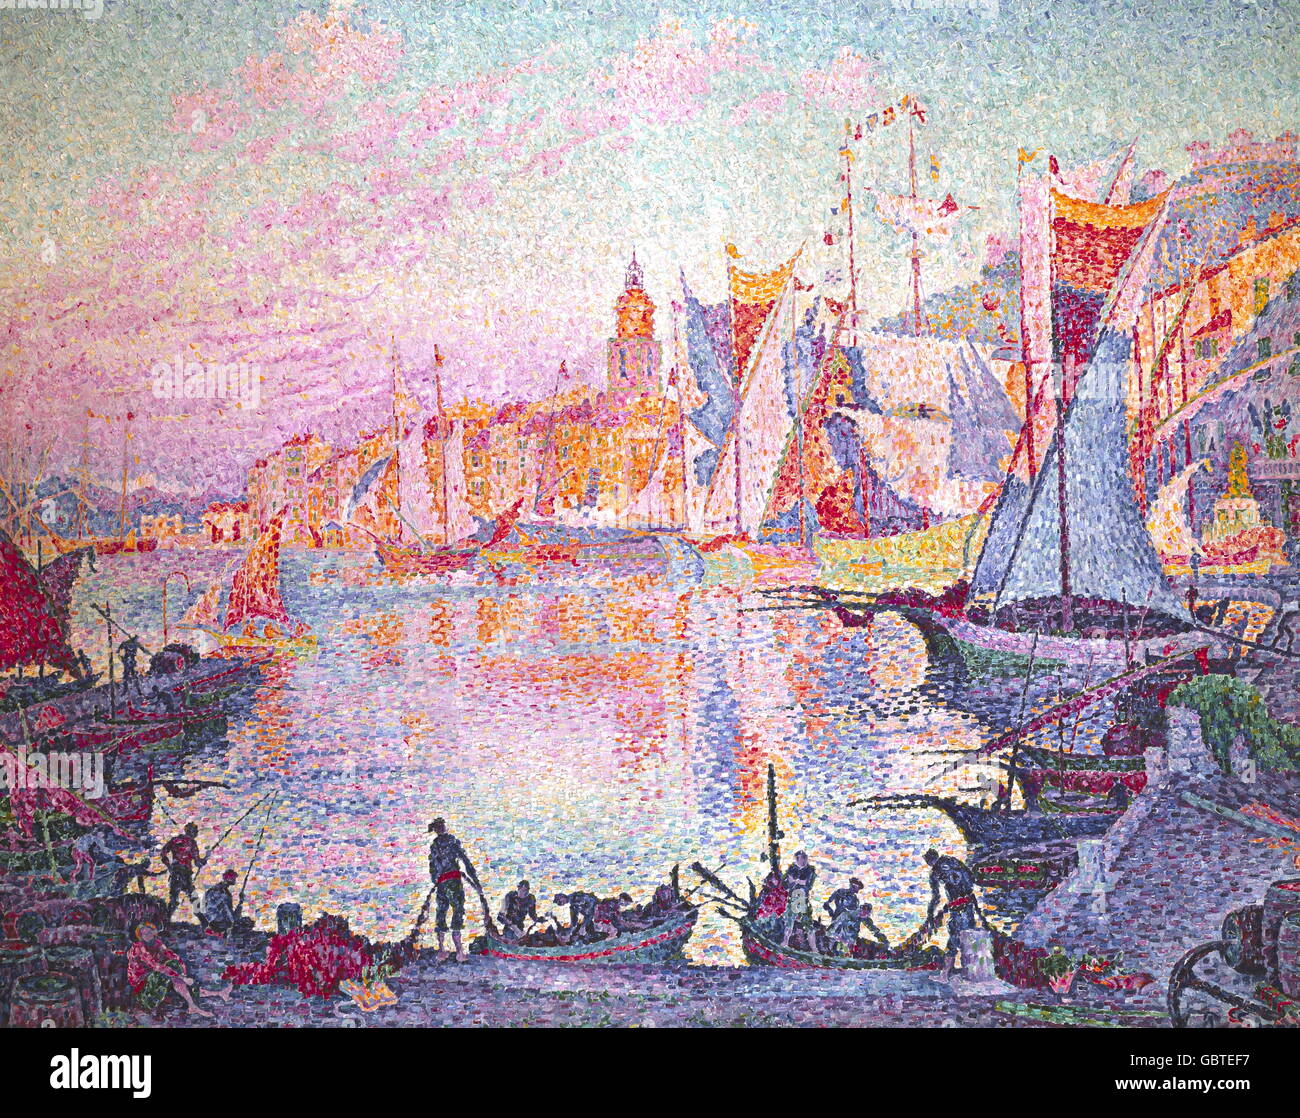 Bildende Kunst, Signac, Paul (1863-1935), Malerei, "den Hafen von Saint Tropez", Öl auf Leinwand, 131 x 161,5 cm, ca. 1901, The National Museum of Western Art, Tokyo, Stockfoto